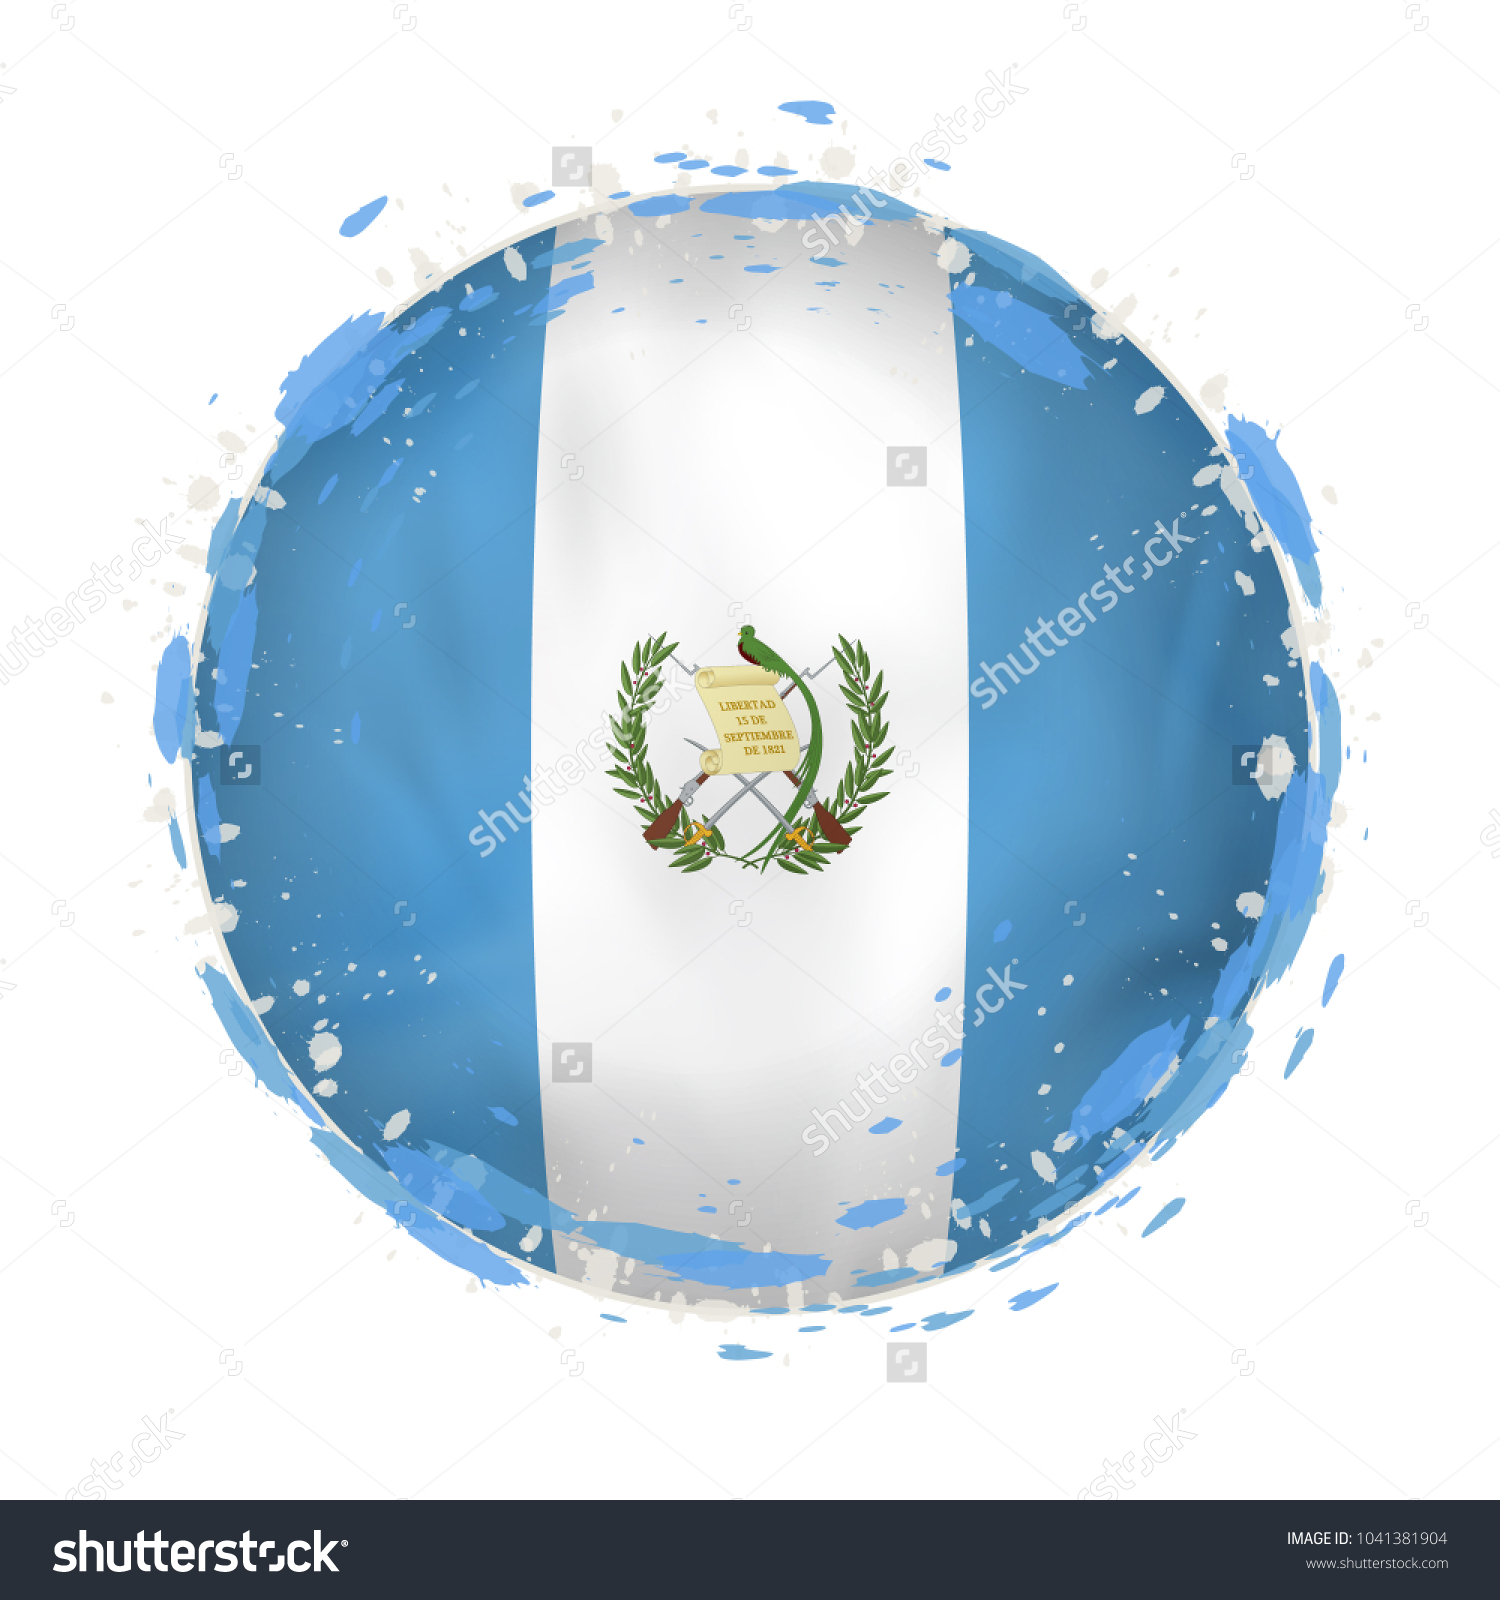 Round Grunge Flag Guatemala Splashes Flag Stock Vector 1041381904 ...